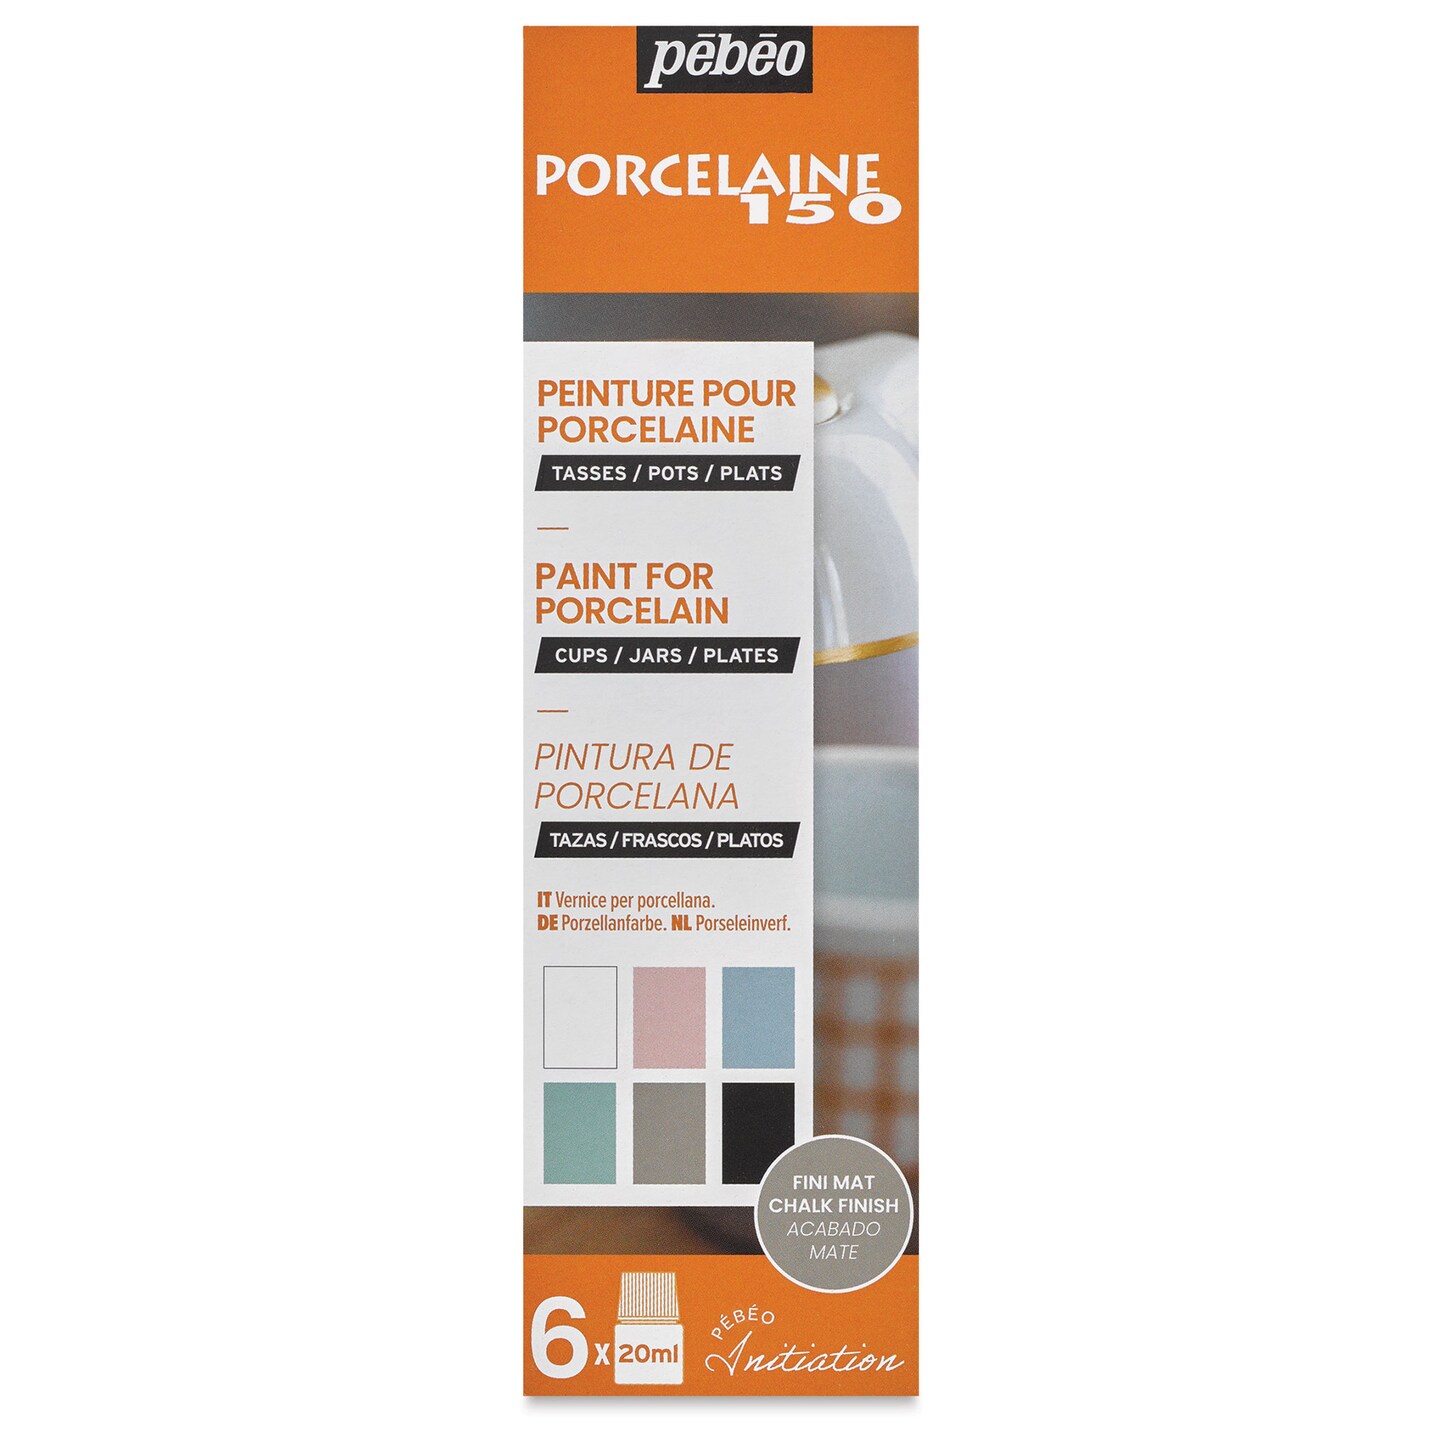 Pebeo Porcelaine 150 Paints - Chalk Colors, Set of 6, 20 ml bottle